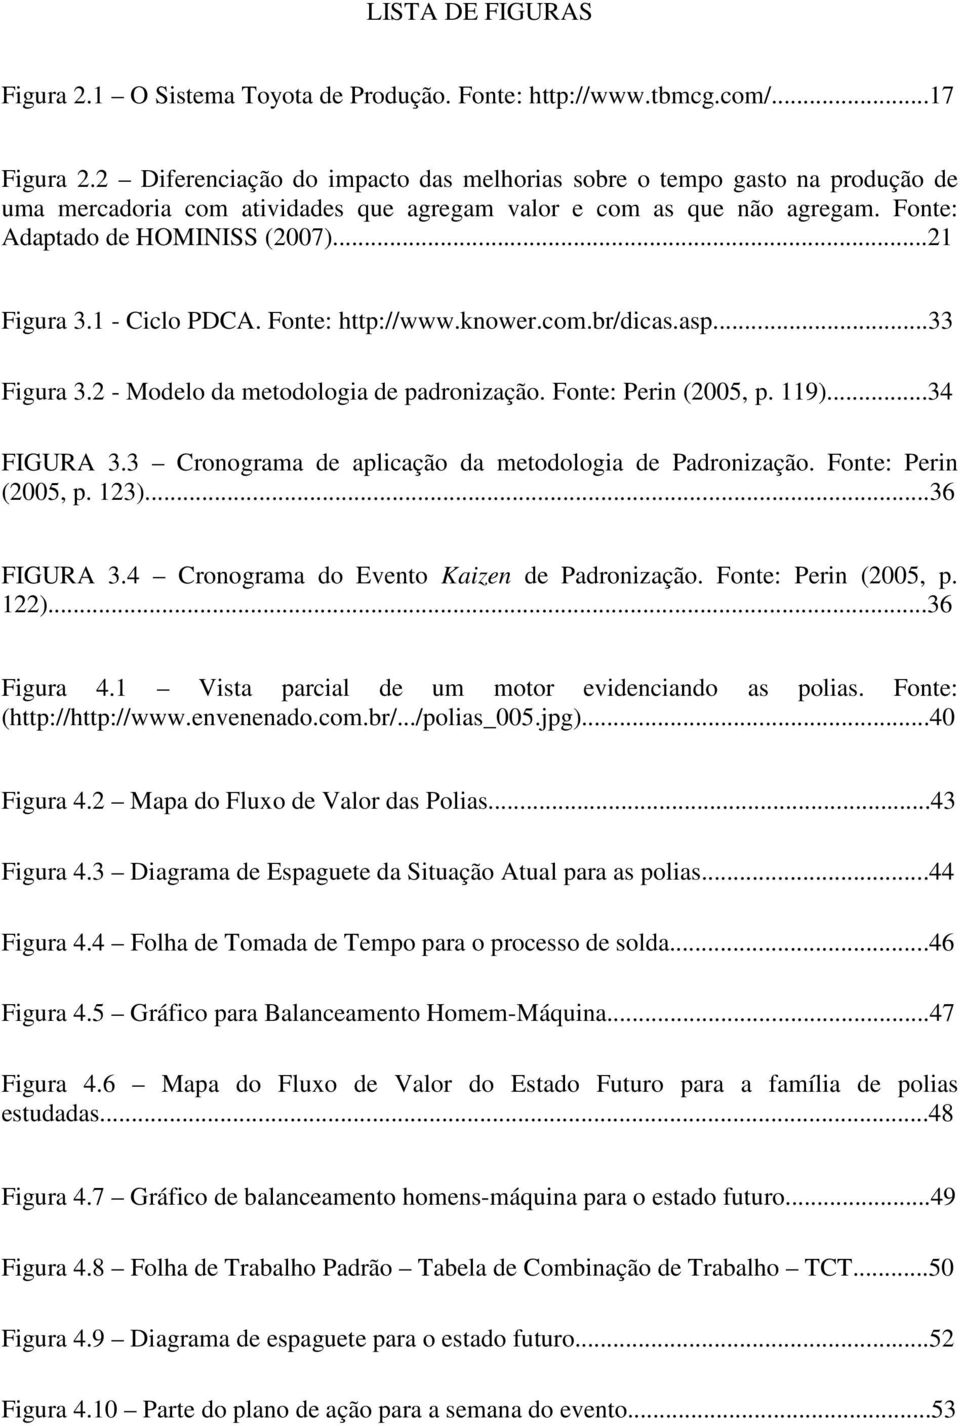 1 - Ciclo PDCA. Fonte: http://www.knower.com.br/dicas.asp...33 Figura 3.2 - Modelo da metodologia de padronização. Fonte: Perin (2005, p. 119)...34 FIGURA 3.